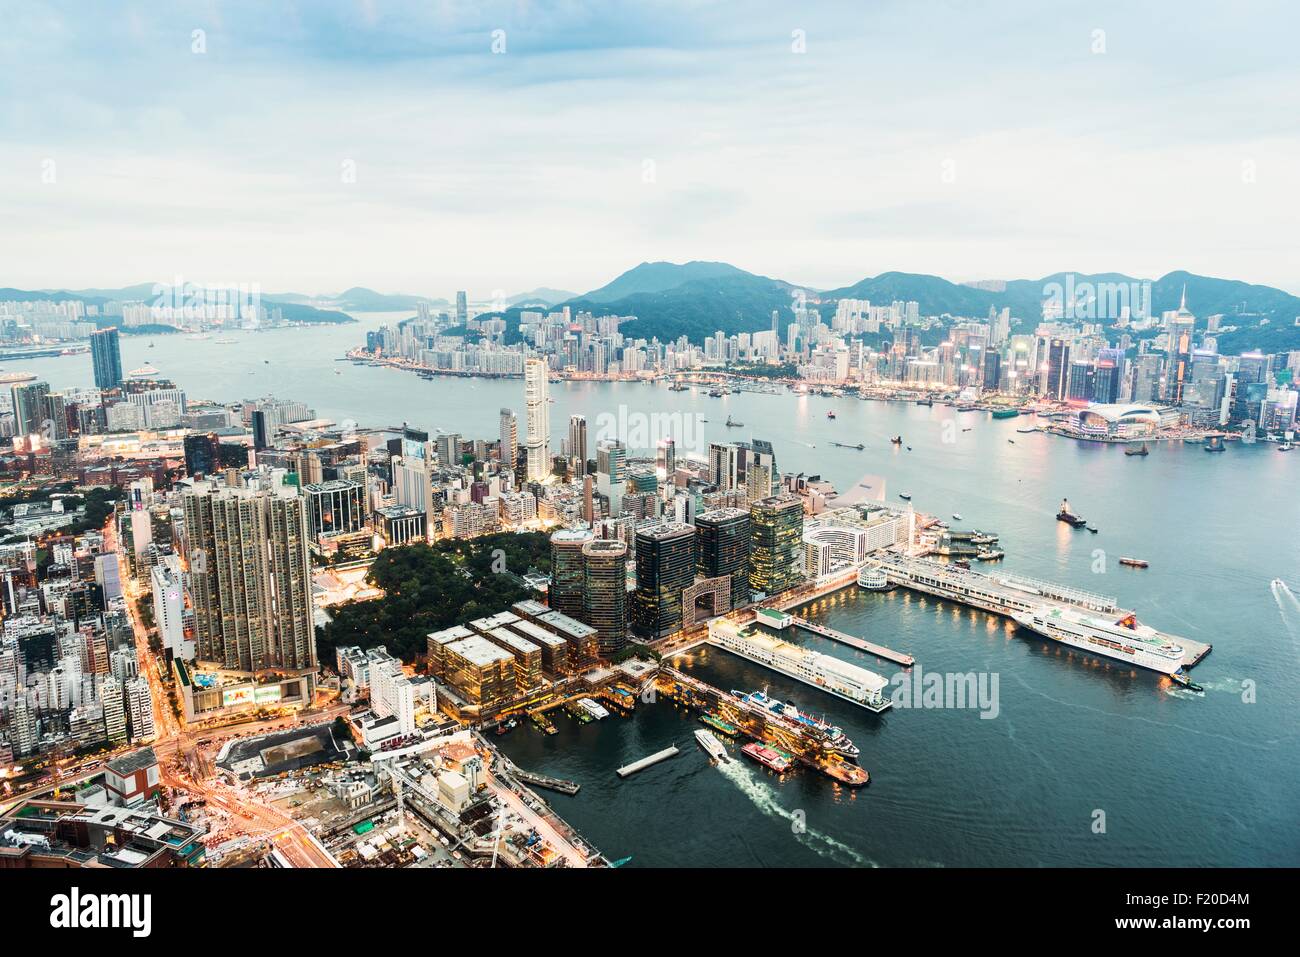 Hong Kong island and skyline, Hong Kong, China Stock Photo